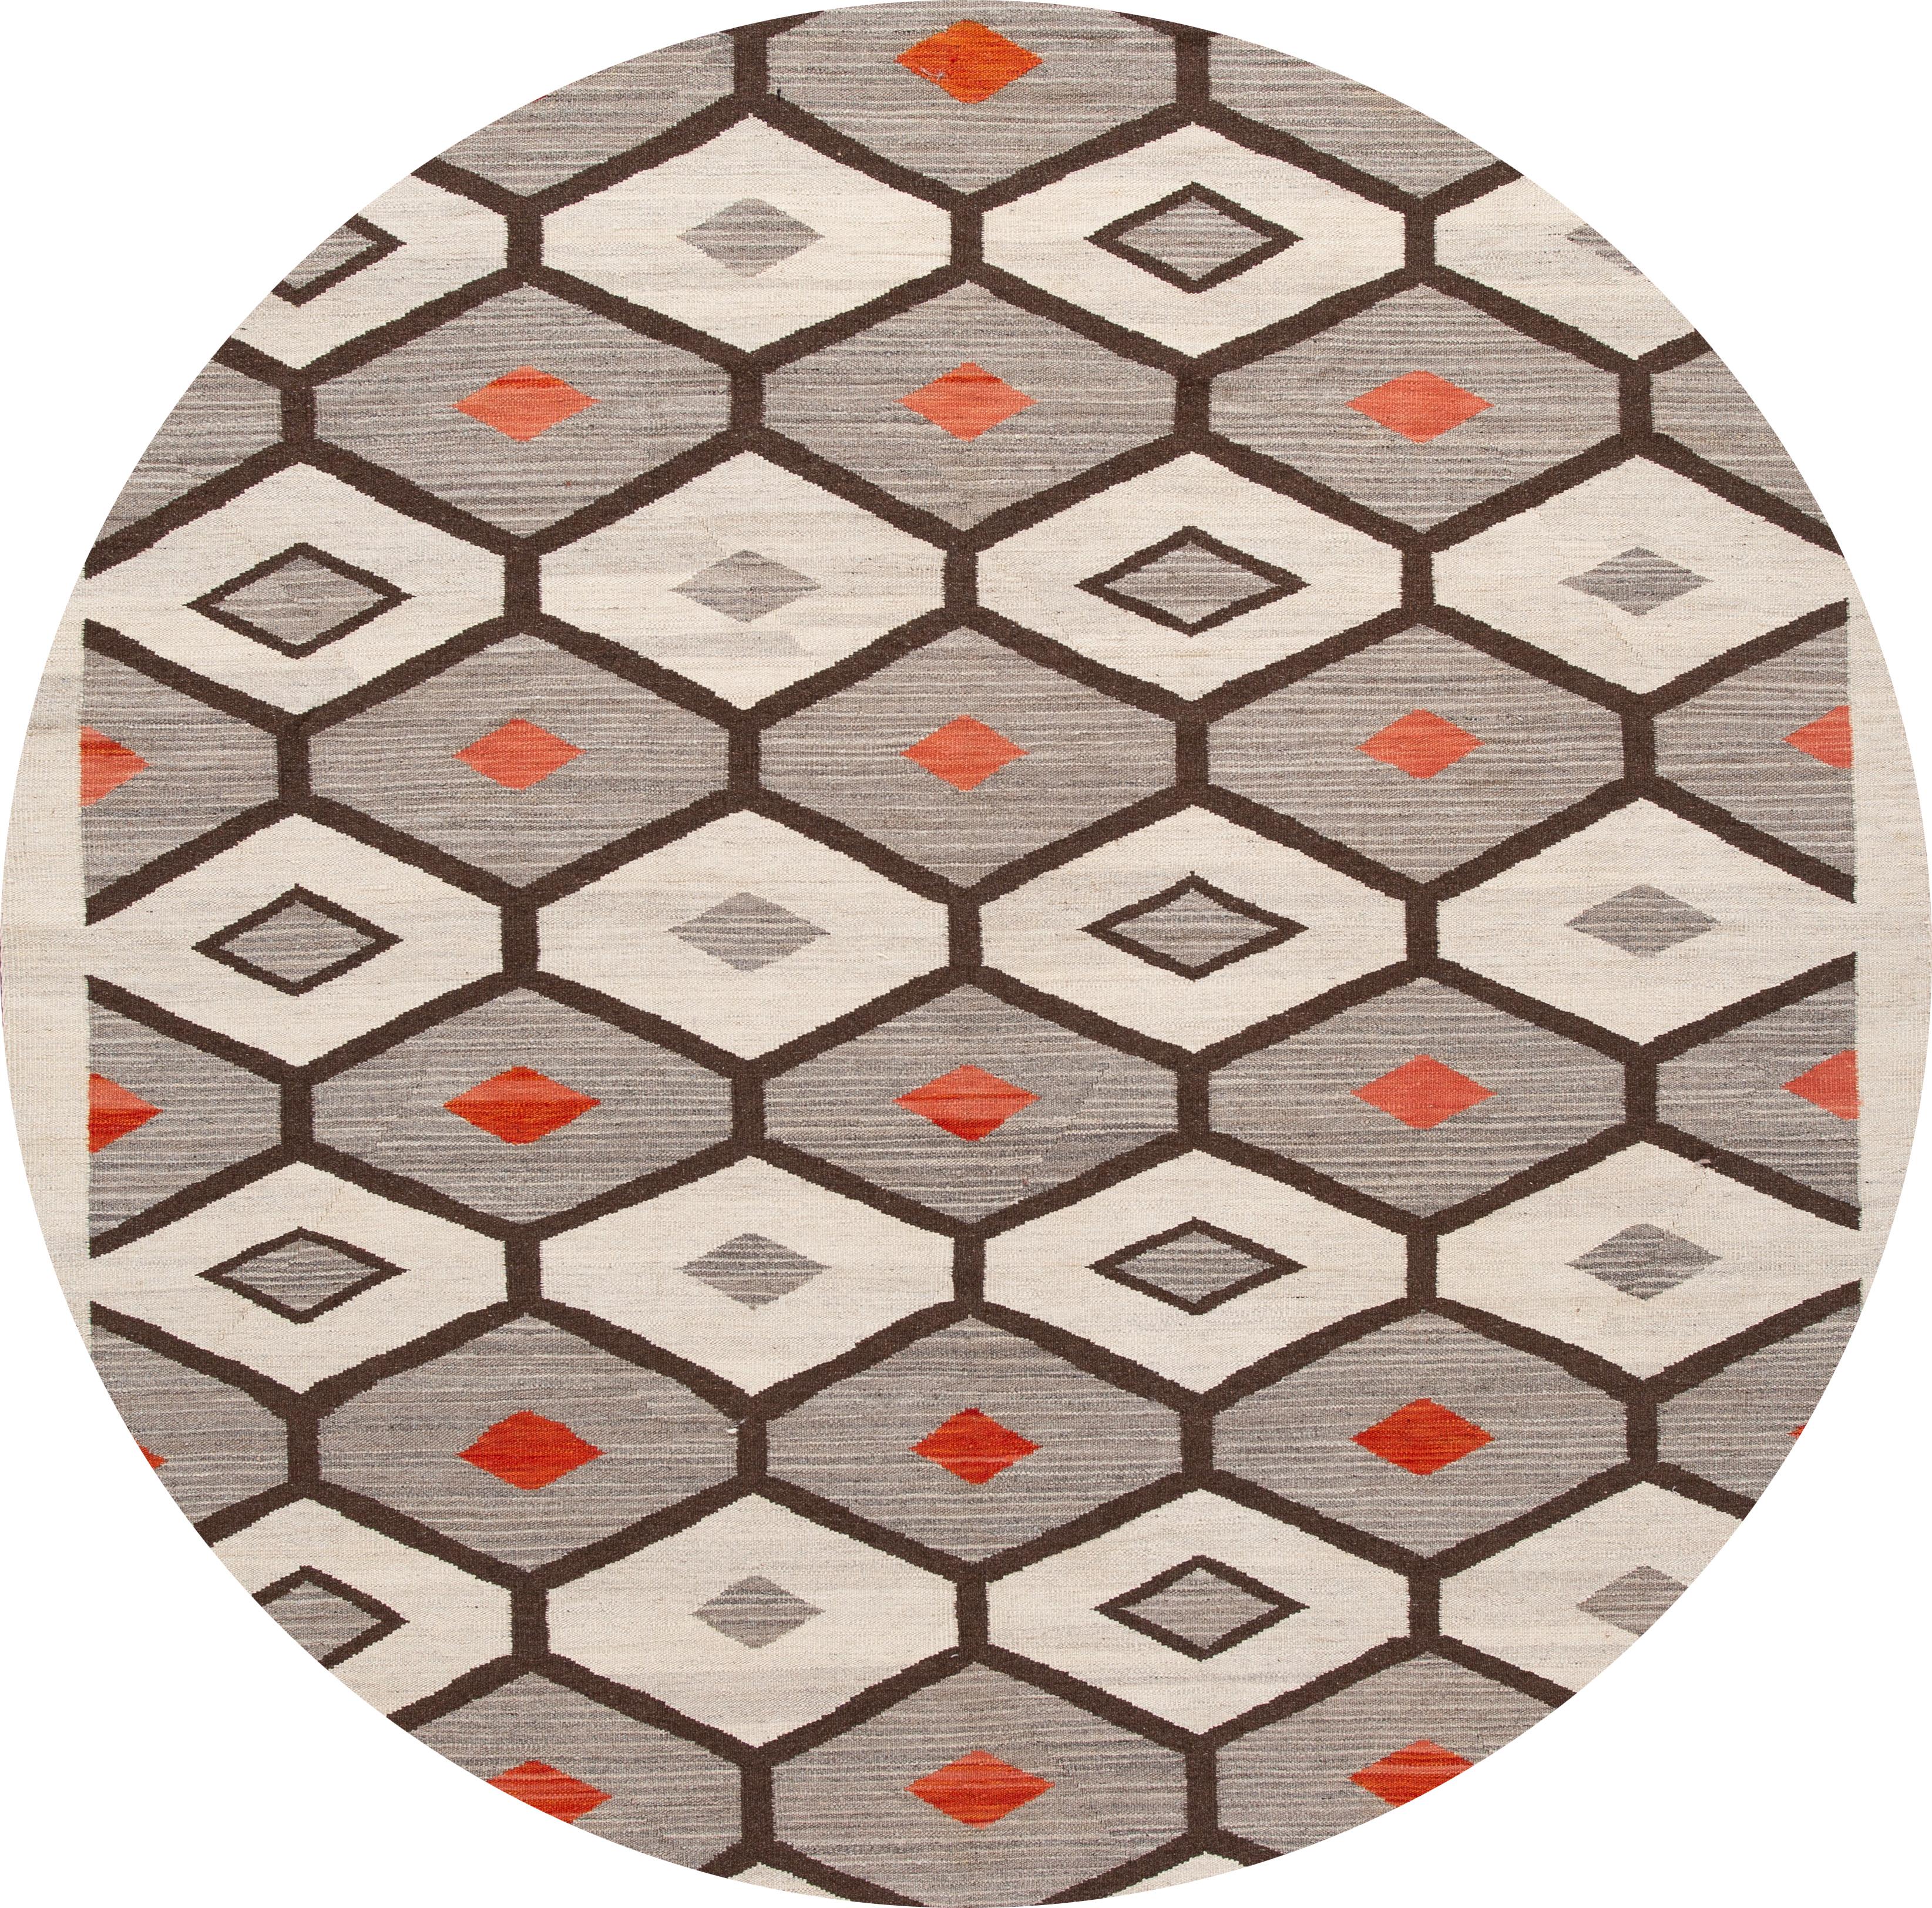 Magnifique tapis contemporain à tissage plat de style Navajo, un tapis en laine tissé à la main avec un champ gris, des accents ivoires et rouges dans un design géométrique all-over.

Ce tapis mesure 9' 9